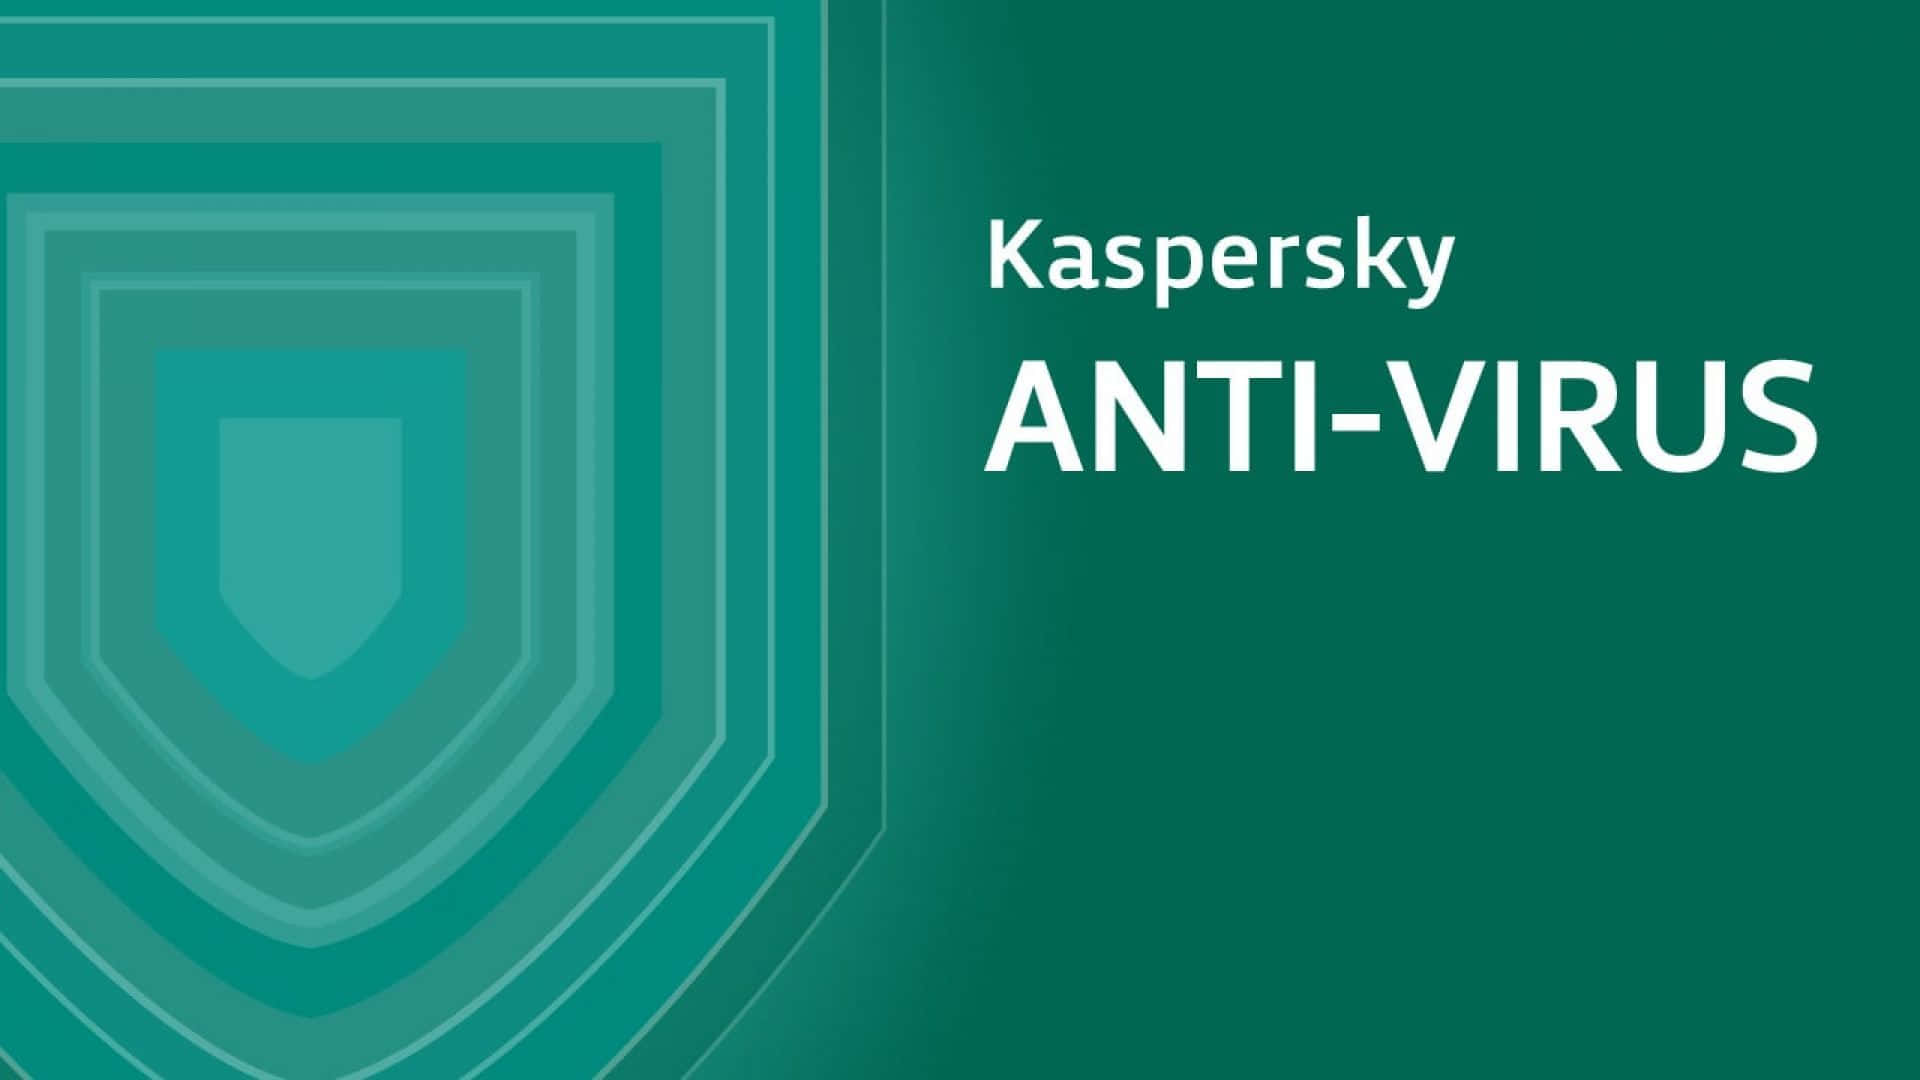 Kasperskyantivirus Konzentrisches Schild-symbol. Wallpaper